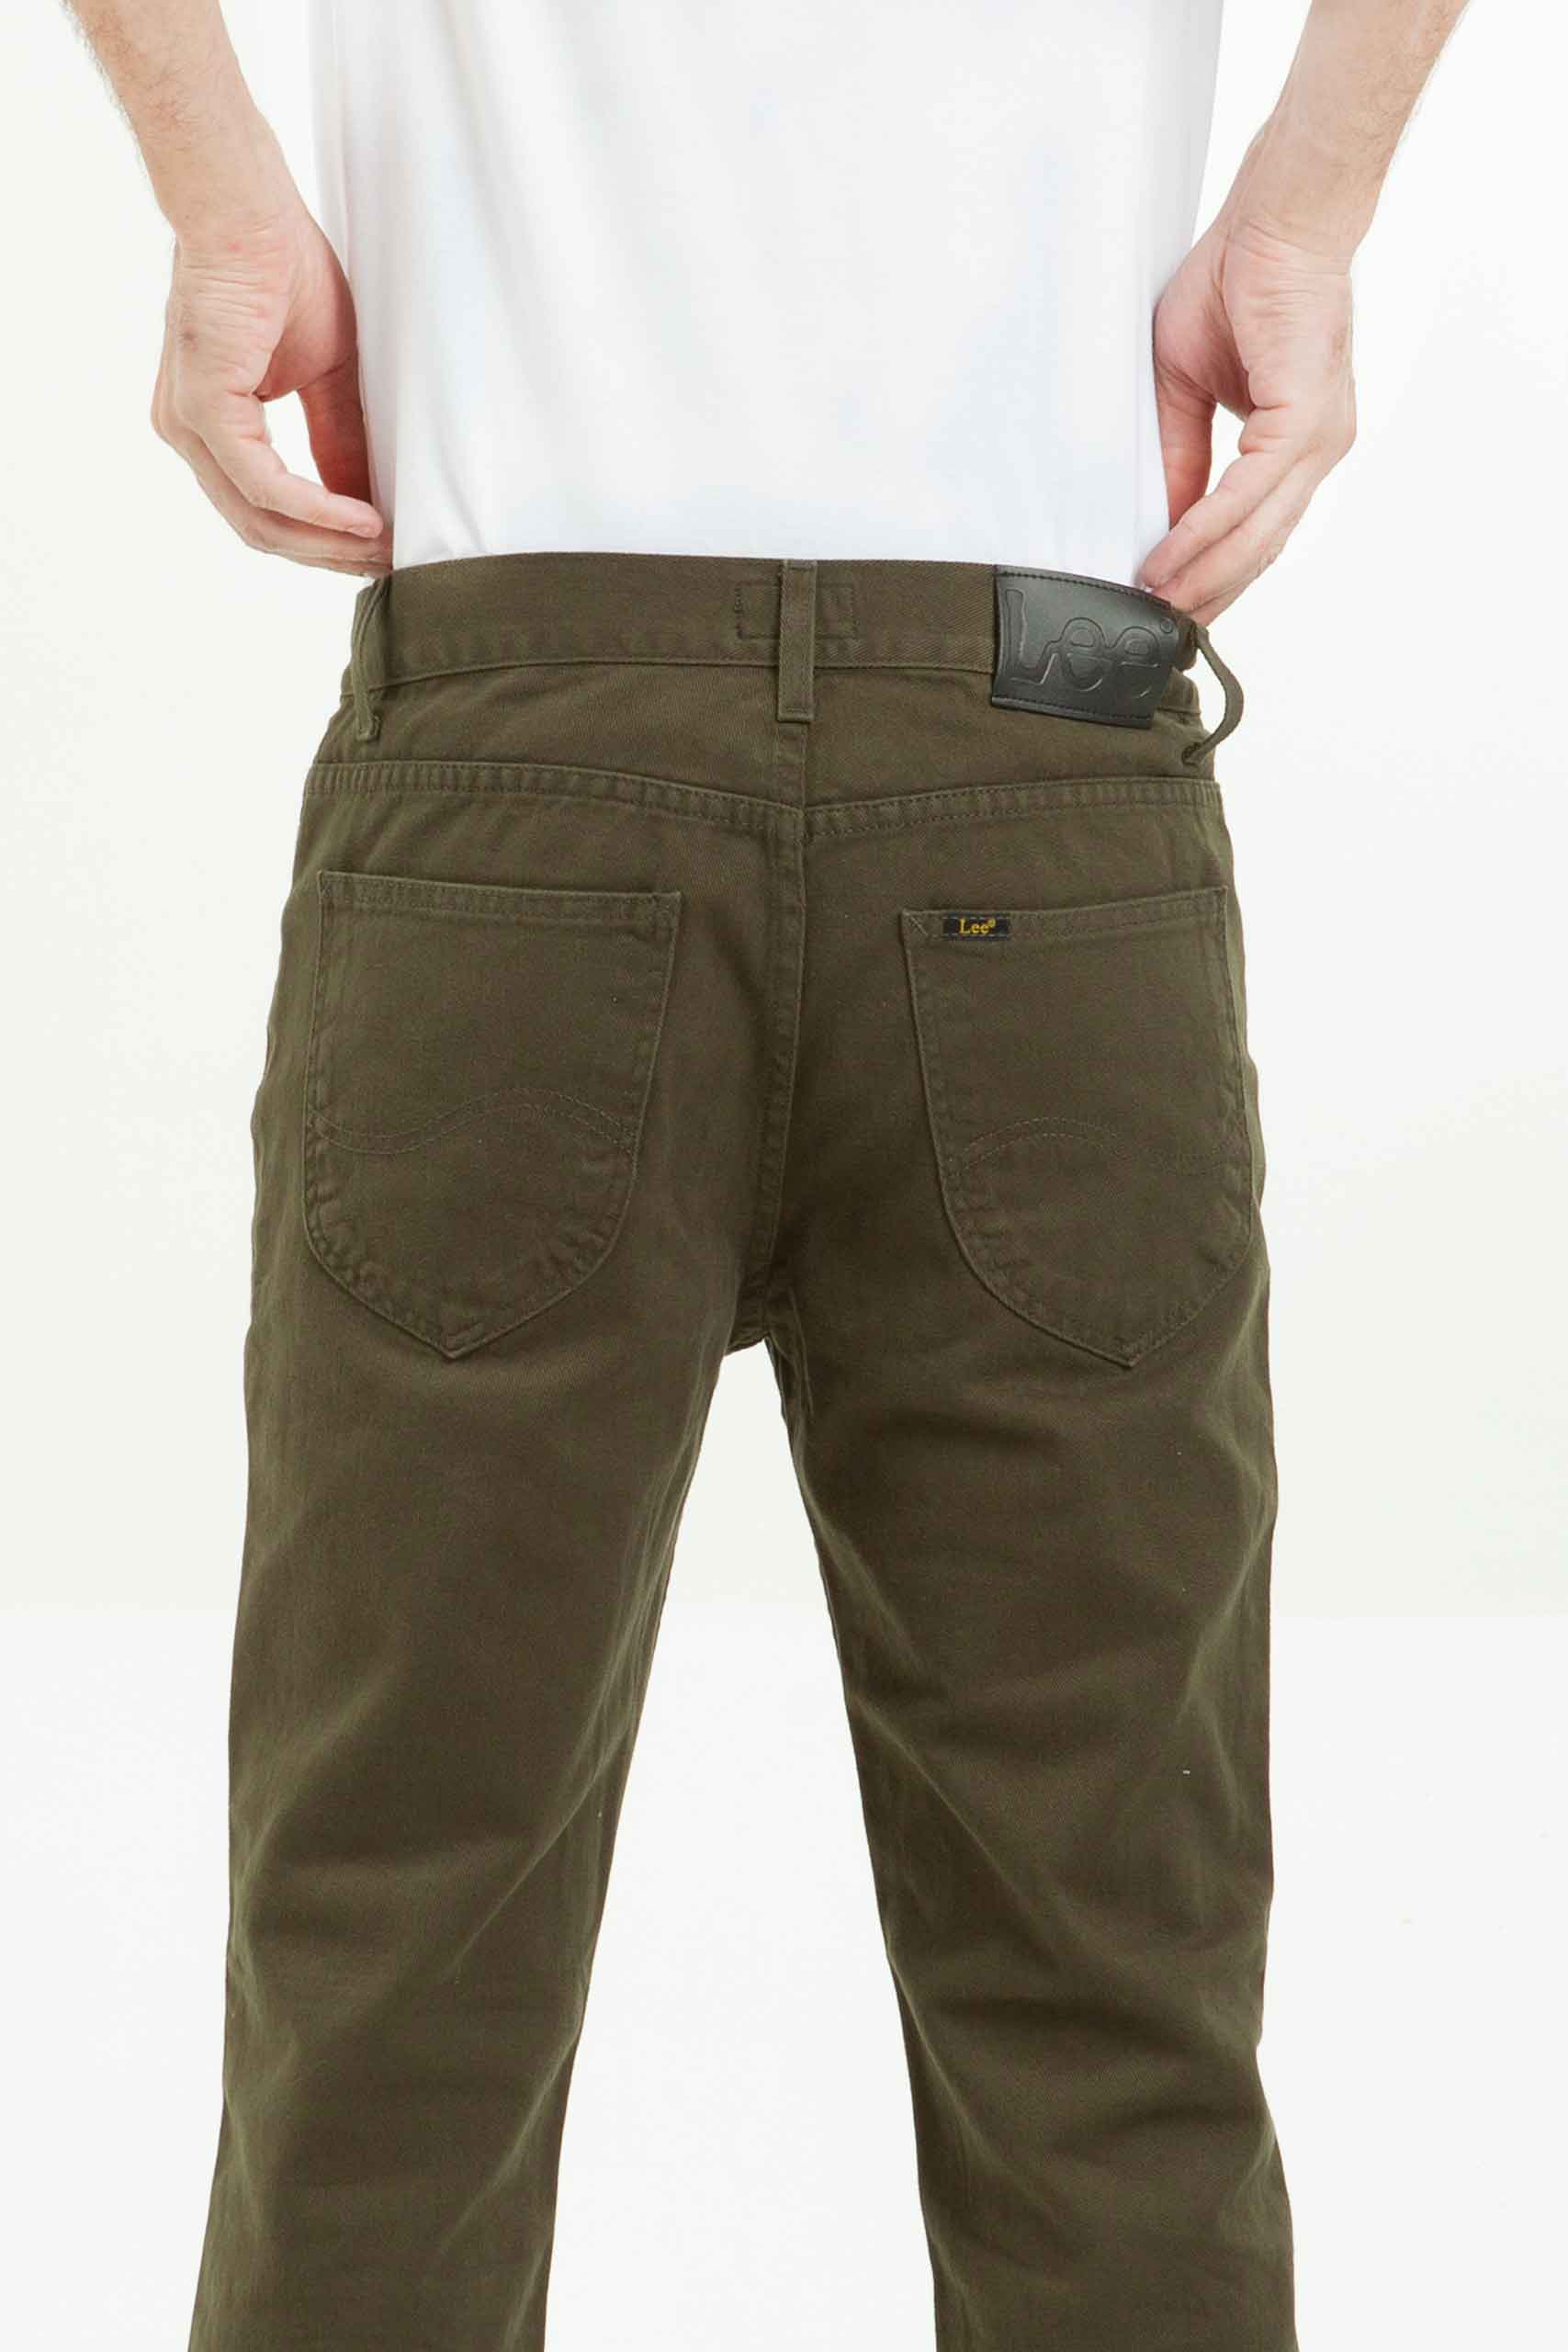 Vista posterior de jean de color verde con bolsillos de marca lee